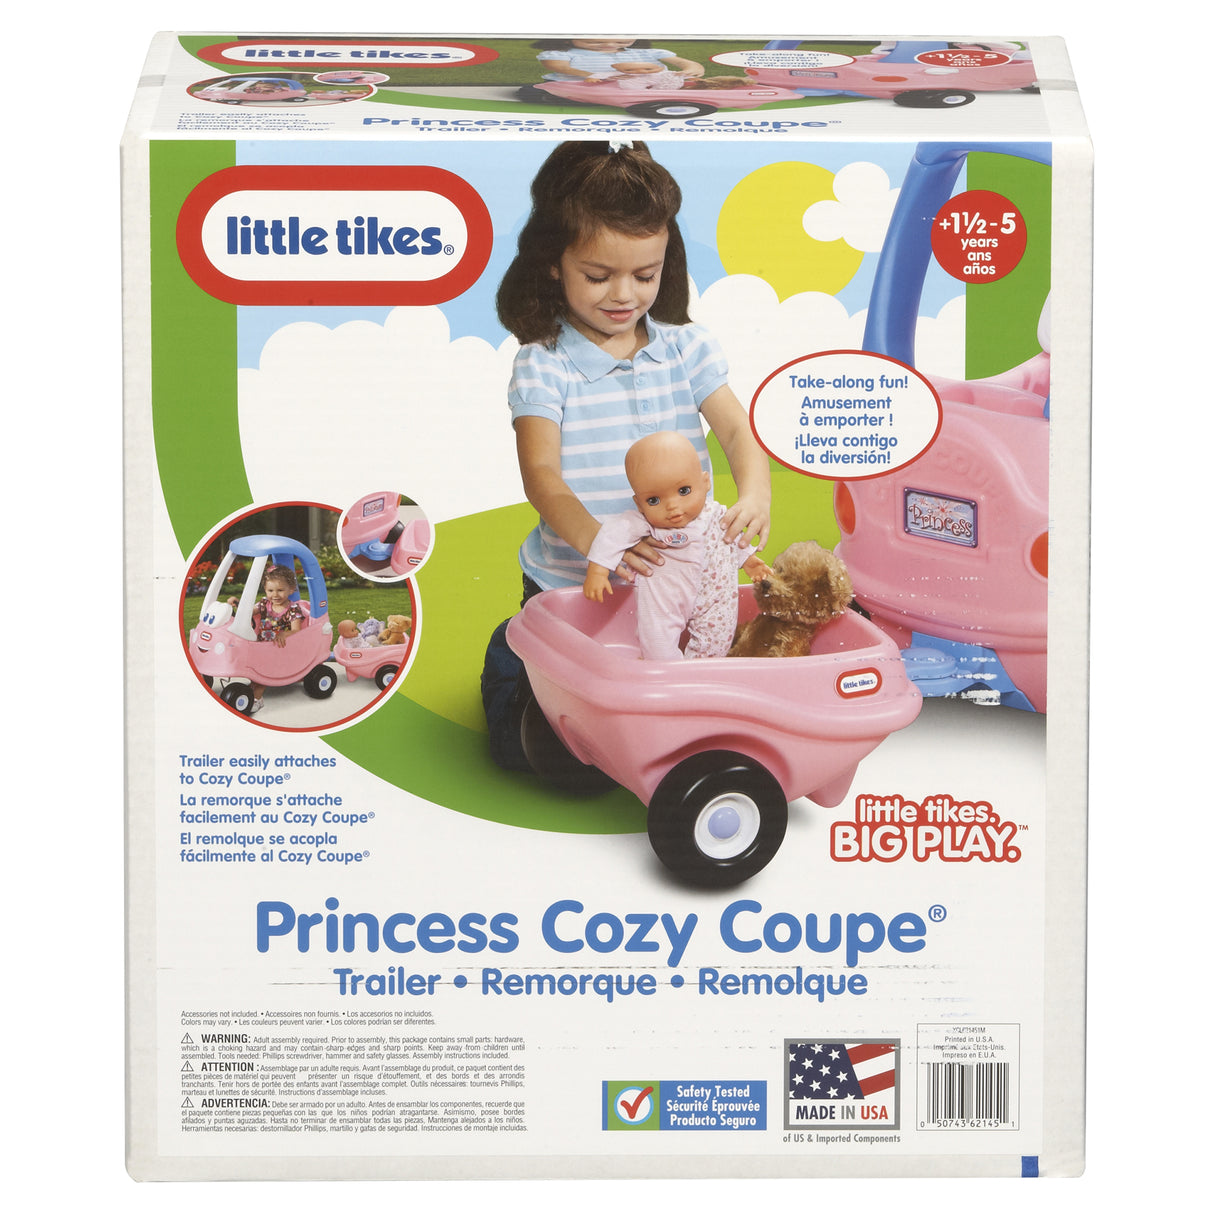 Little Tikes Princess Cozy Coupe Trailer